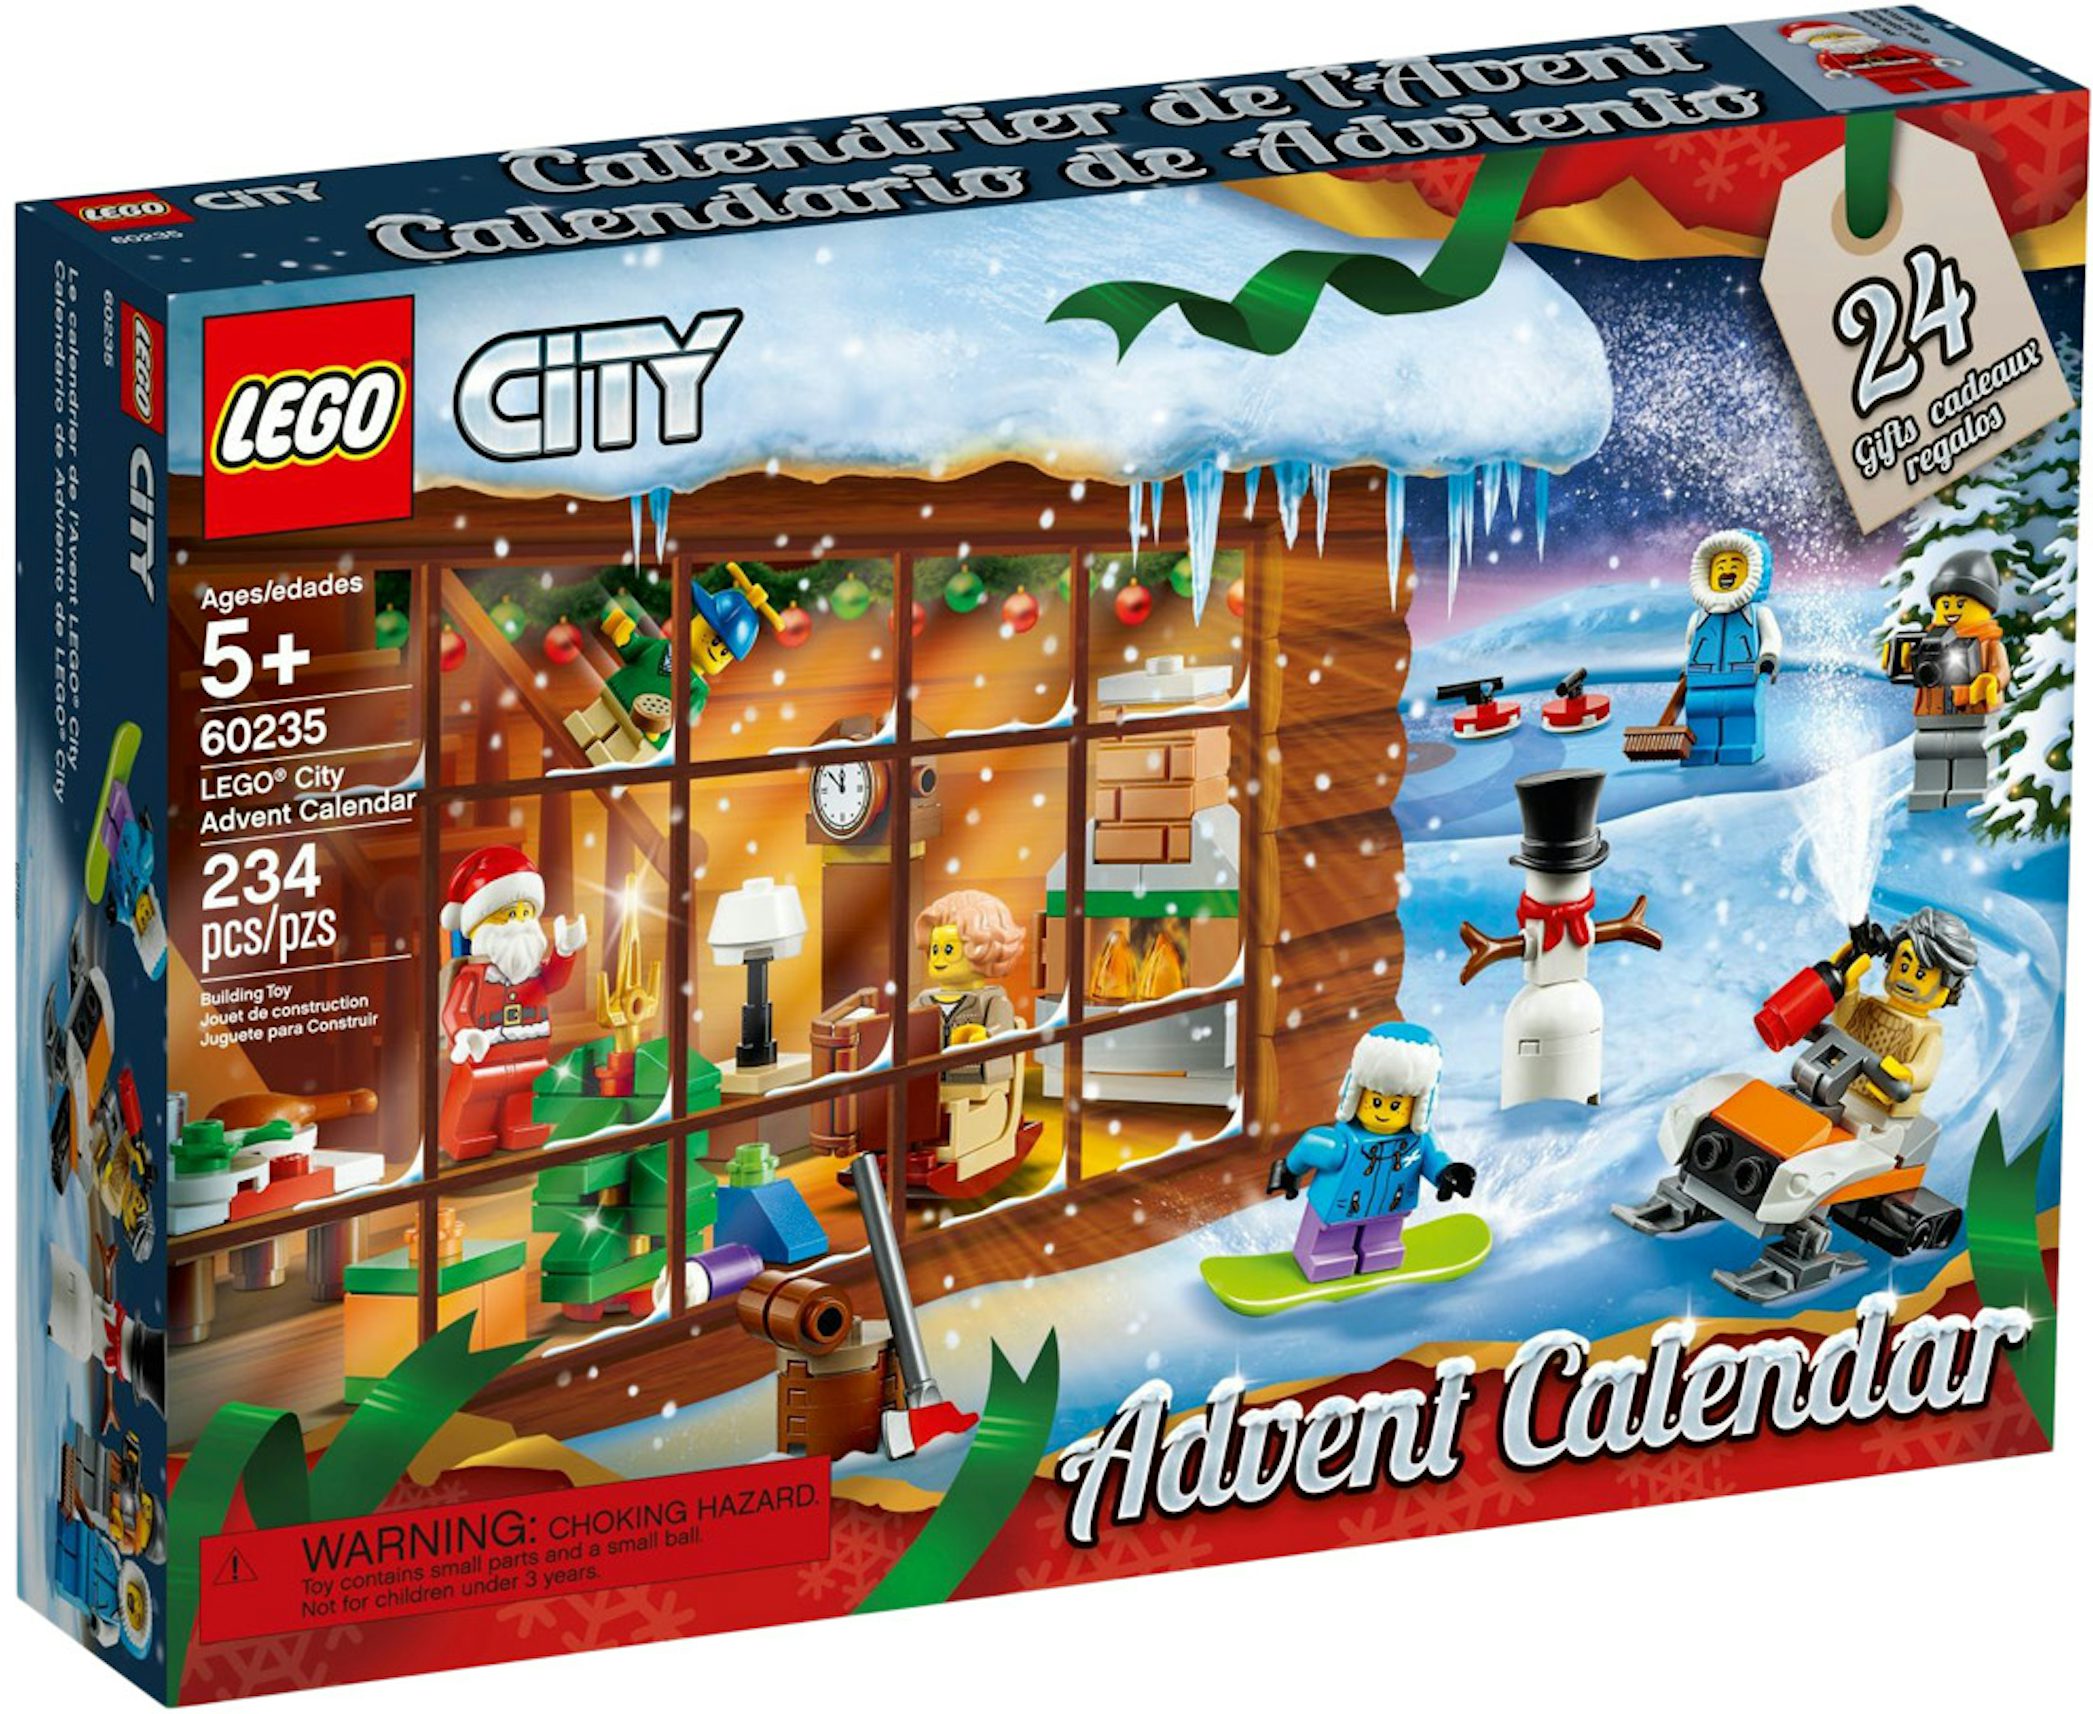  LEGO City Advent Calendar 2824 : Toys & Games